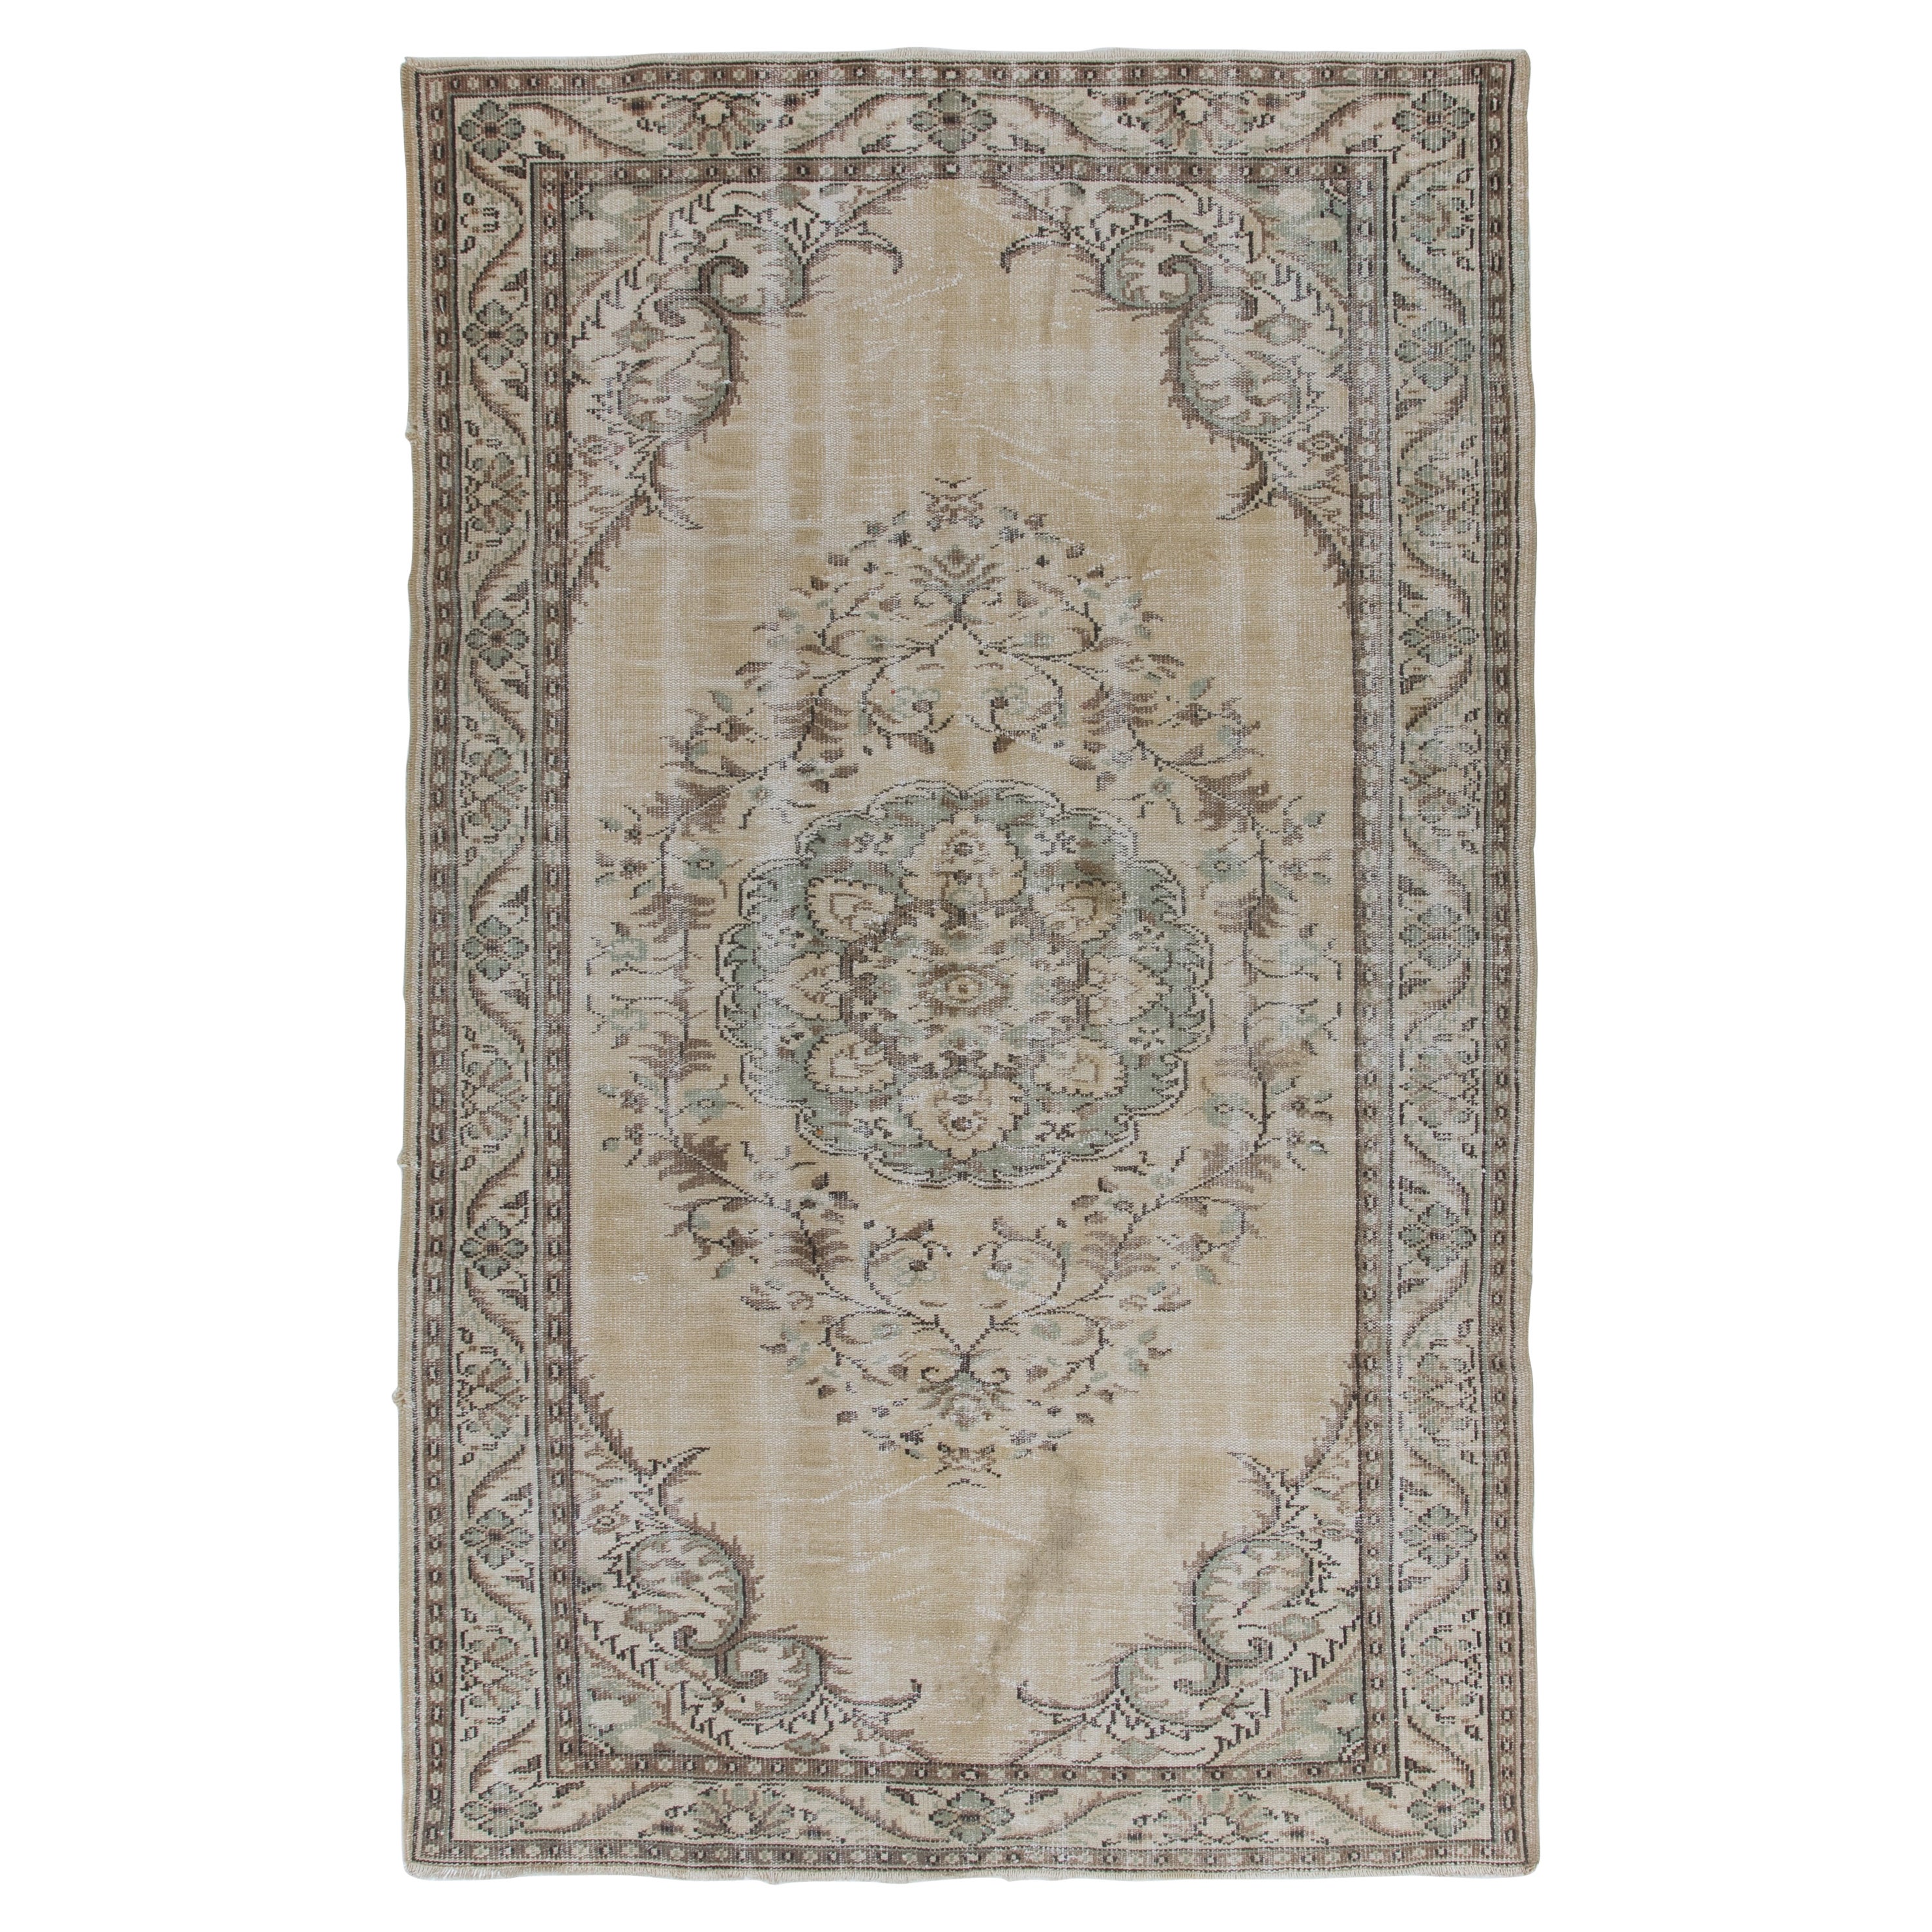 6.2x9.8 Ft Vintage türkischen Bereich Teppich, Wolle Hand Made Teppich, Bodenbelag